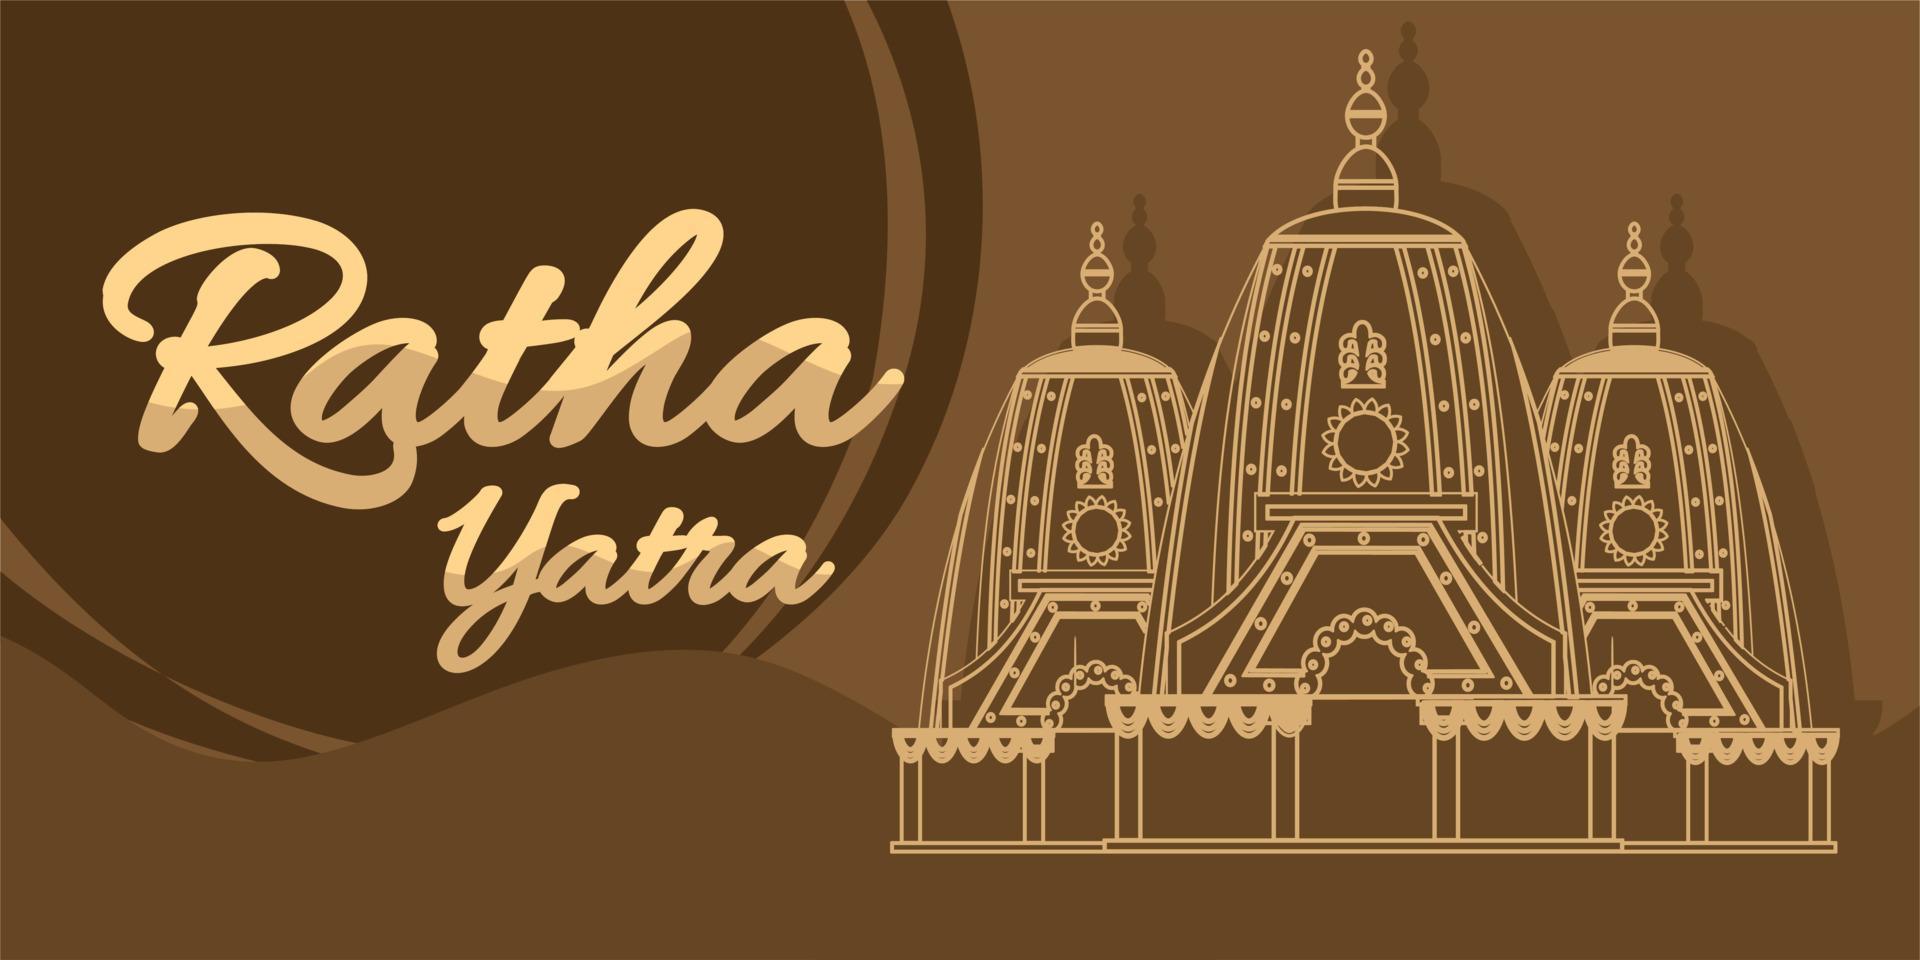 ratha yatra festival ein Streitwagen mit hölzernen Gottheiten von Jagannath, Baladeva und Subhadra. Feiertagsfahnen-Grußkarten-Vektorillustration vektor